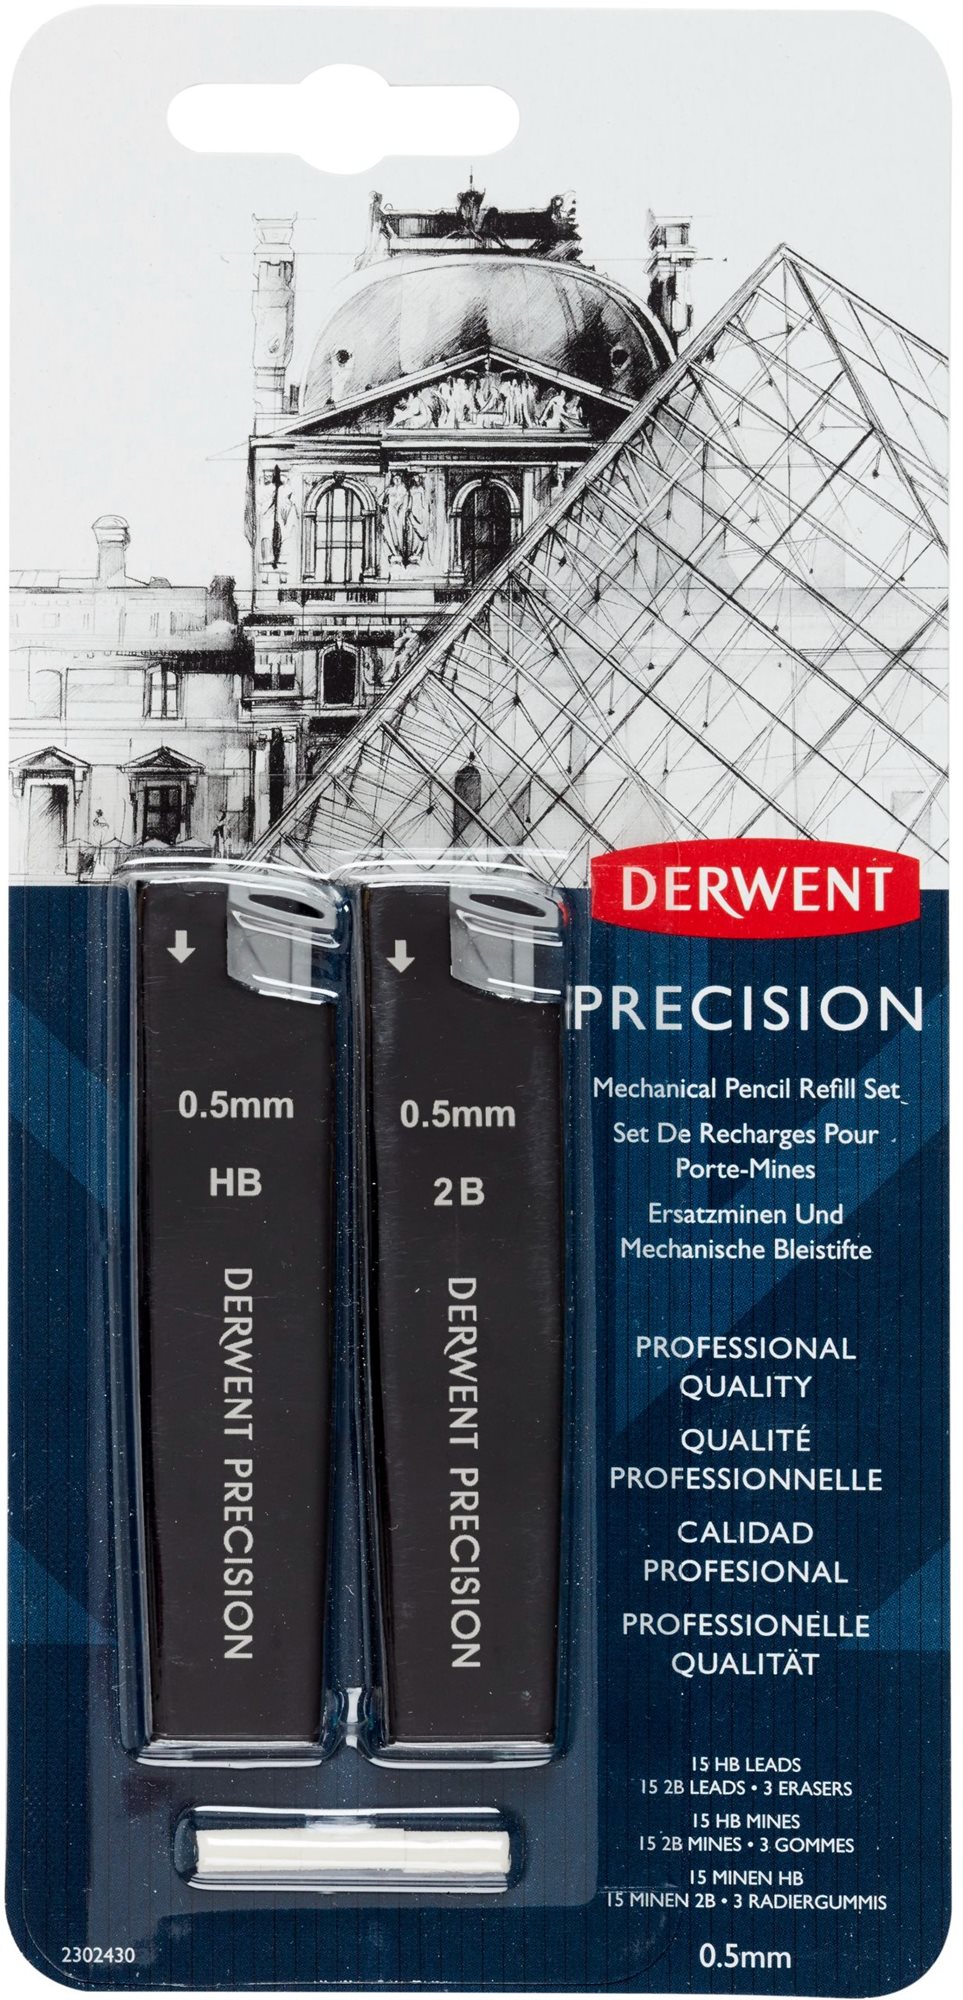 DERWENT Precision Mechanical Pencil Refill Set 0,5 mm HB és 2B, 30 ceruzabél a csomagban + 3 radírgu